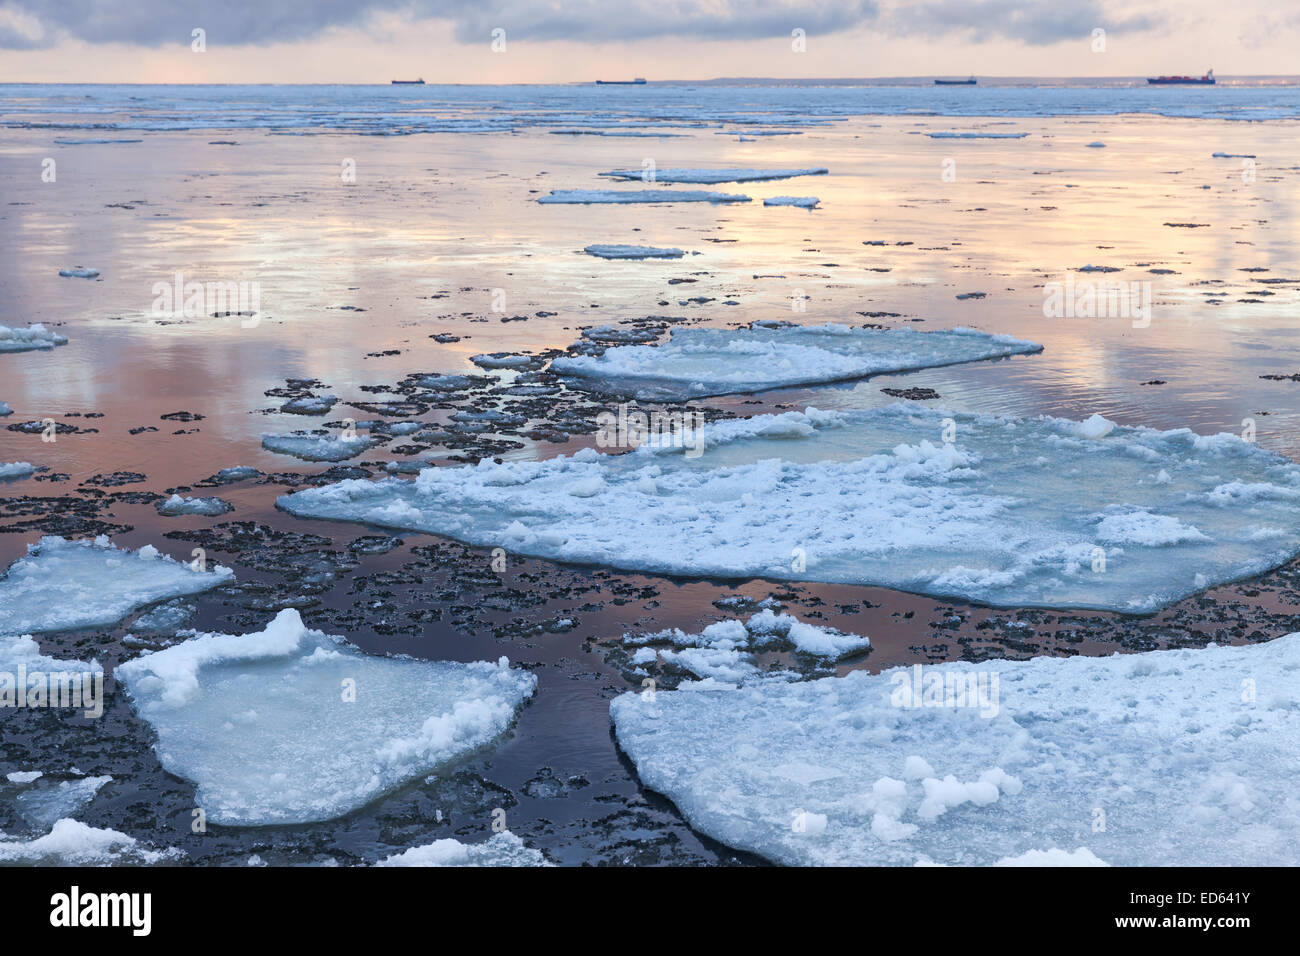 Paysage côtier d'hiver avec de gros fragments de glace flottante. Golfe de Finlande, Russie Banque D'Images